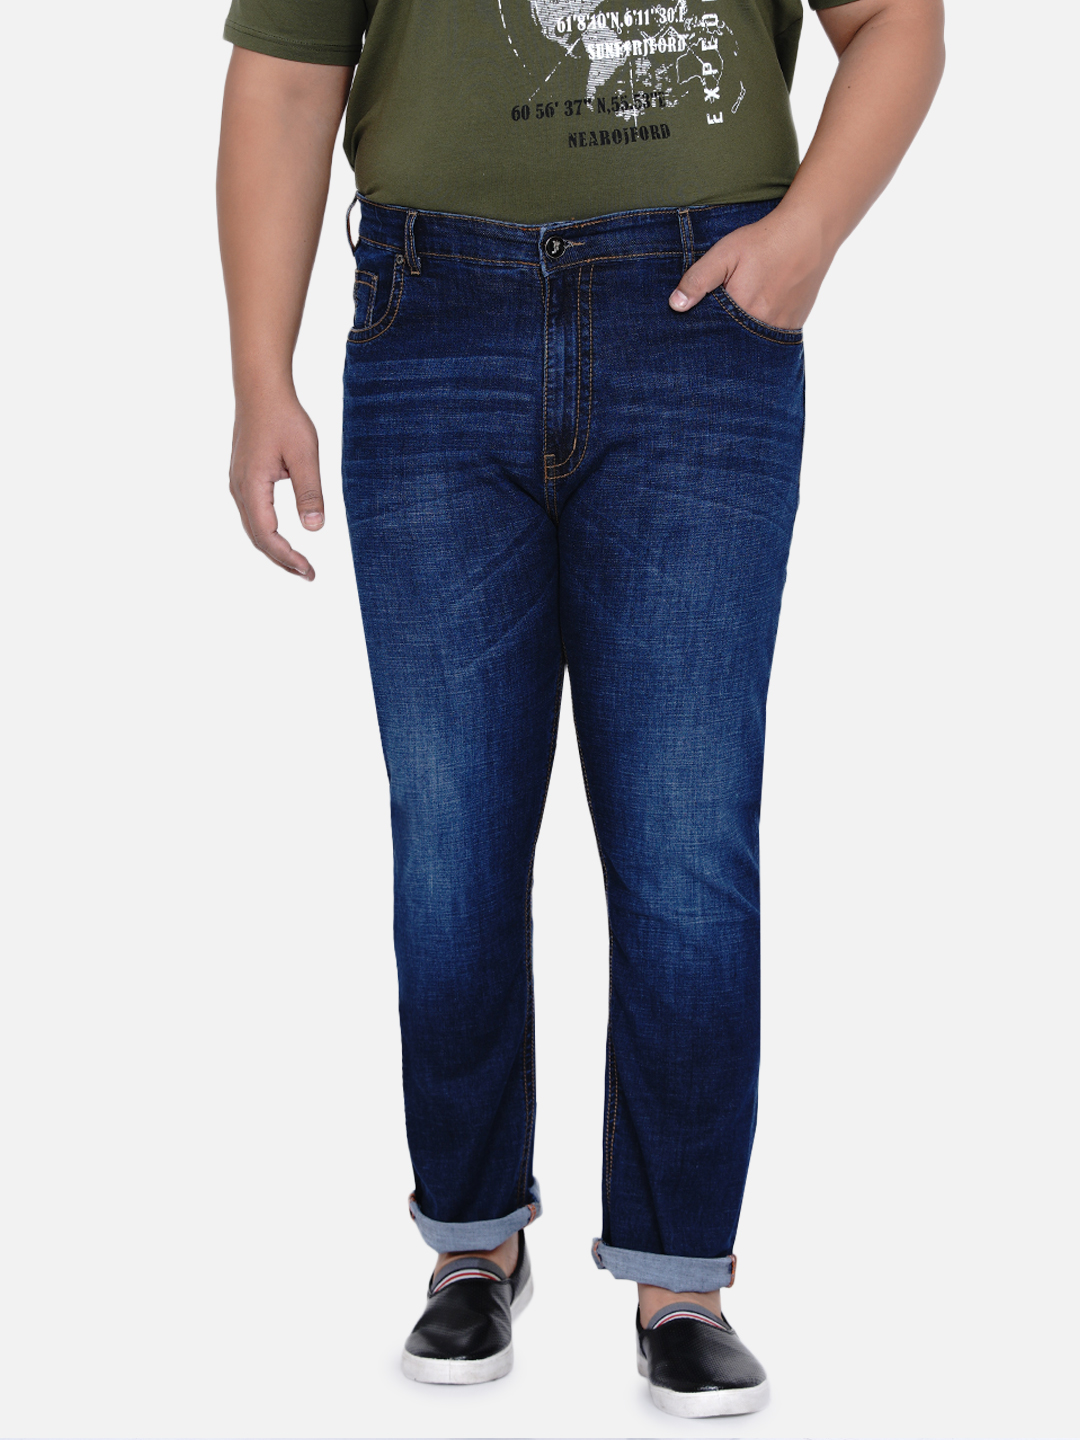 bottomwear/jeans/JPJ6033/jpj6033-3.jpg